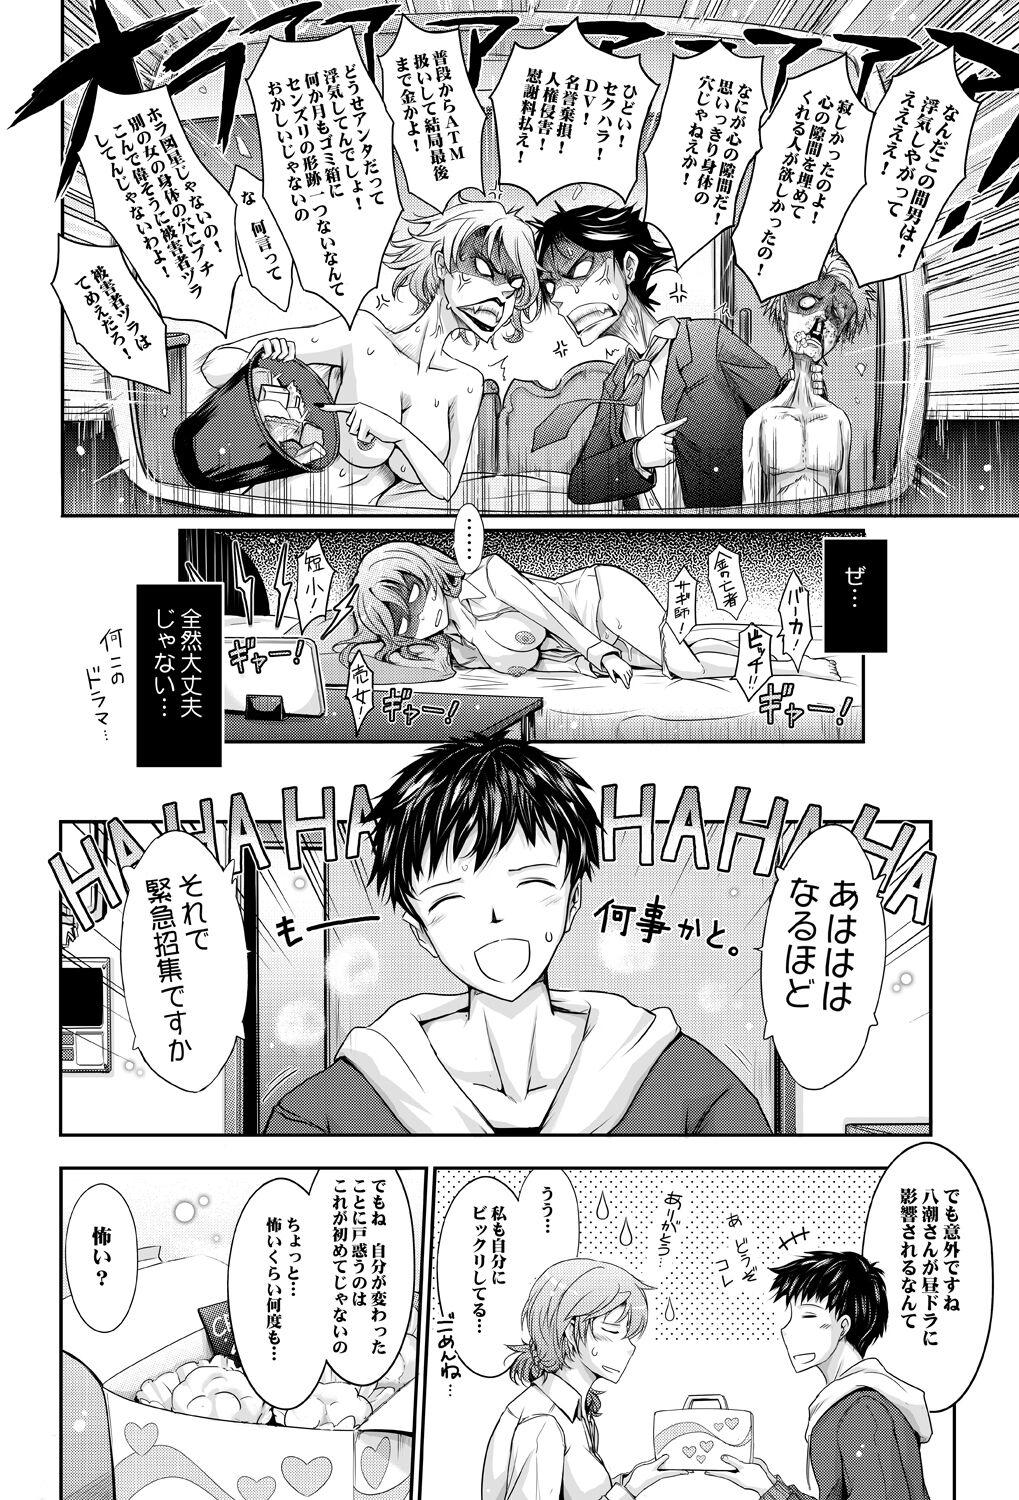 Home Amaku Iyagaru Kanojo no Chijou Episode 3 - Original Point Of View - Page 10